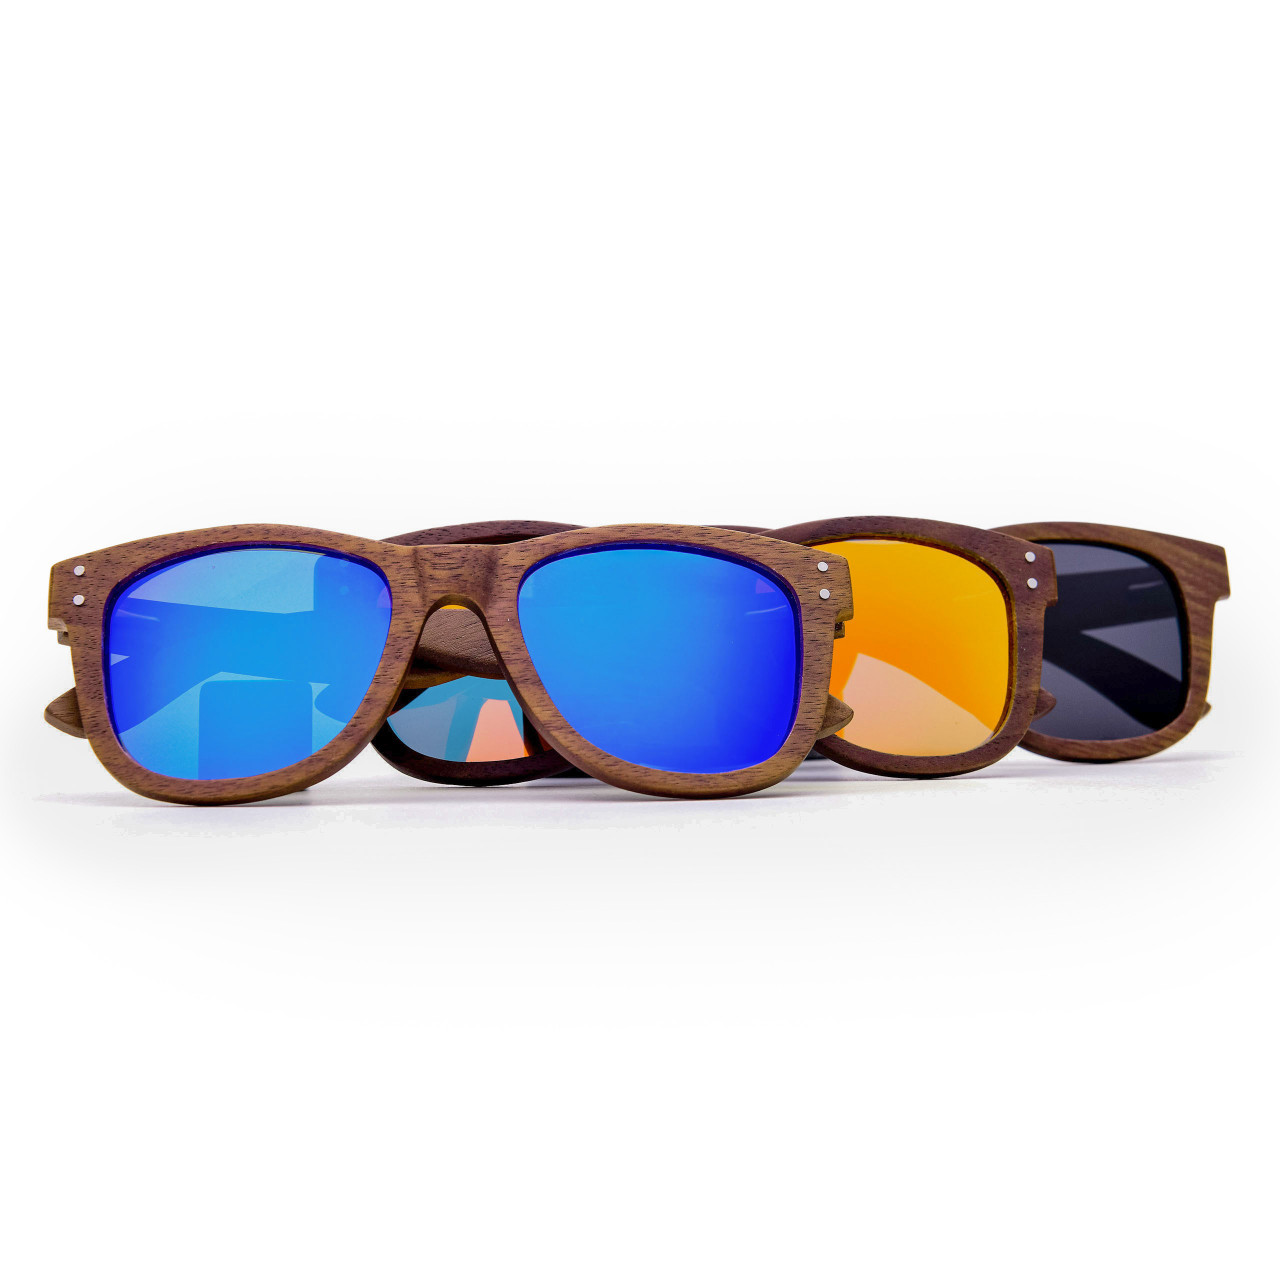 Brýle Wood – modré čočky + tmavý ořech s gravírováním